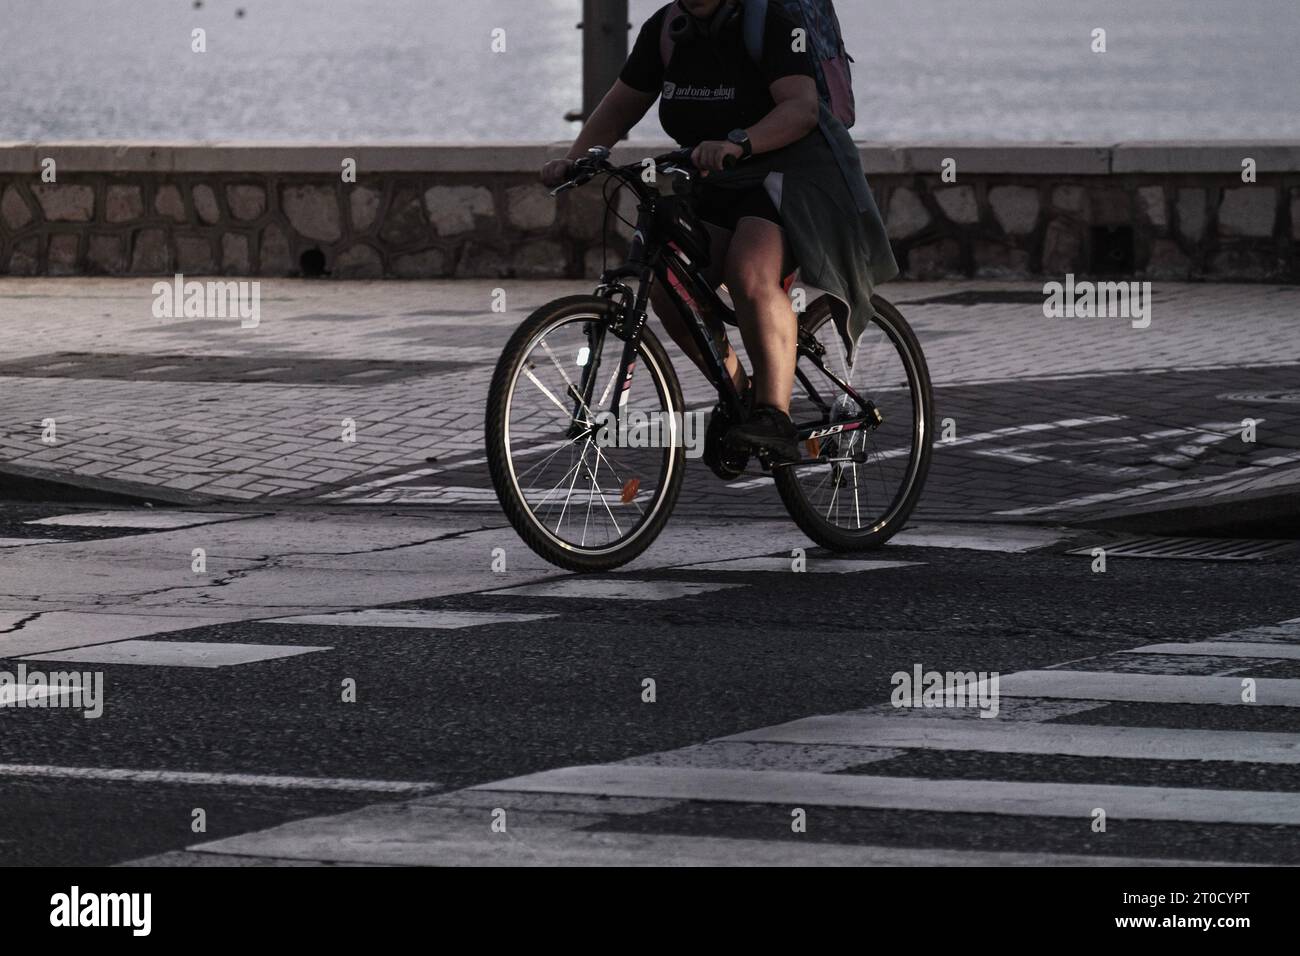 Les gens faisant du sport sur la promenade, homme faisant du vélo traversant la voie cyclable de passage piétonnier Banque D'Images